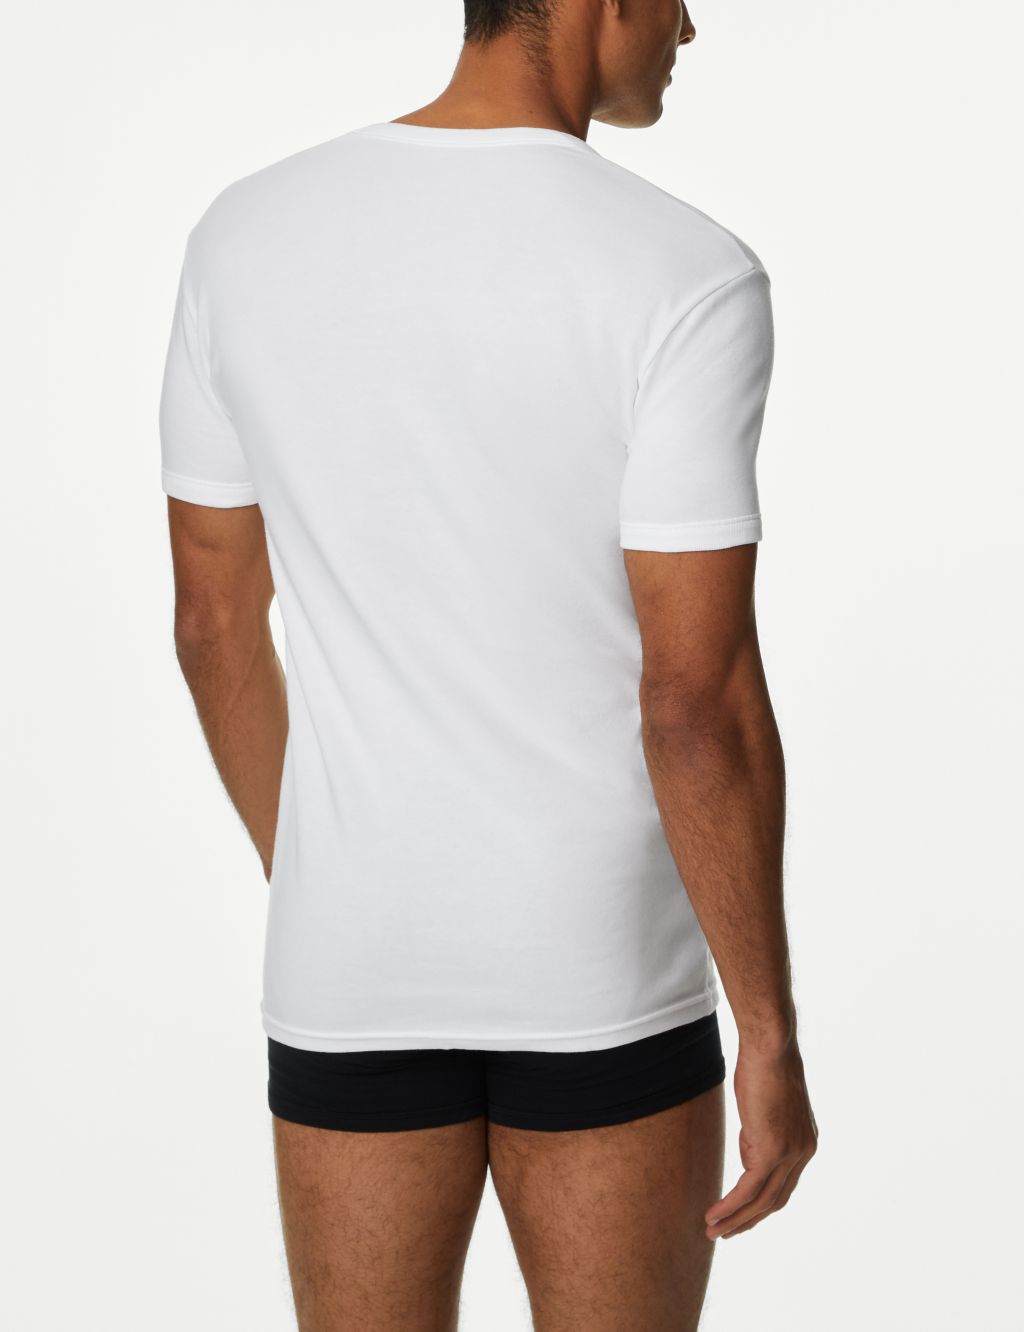 3pk Pure Cotton T-Shirt Vests image 2